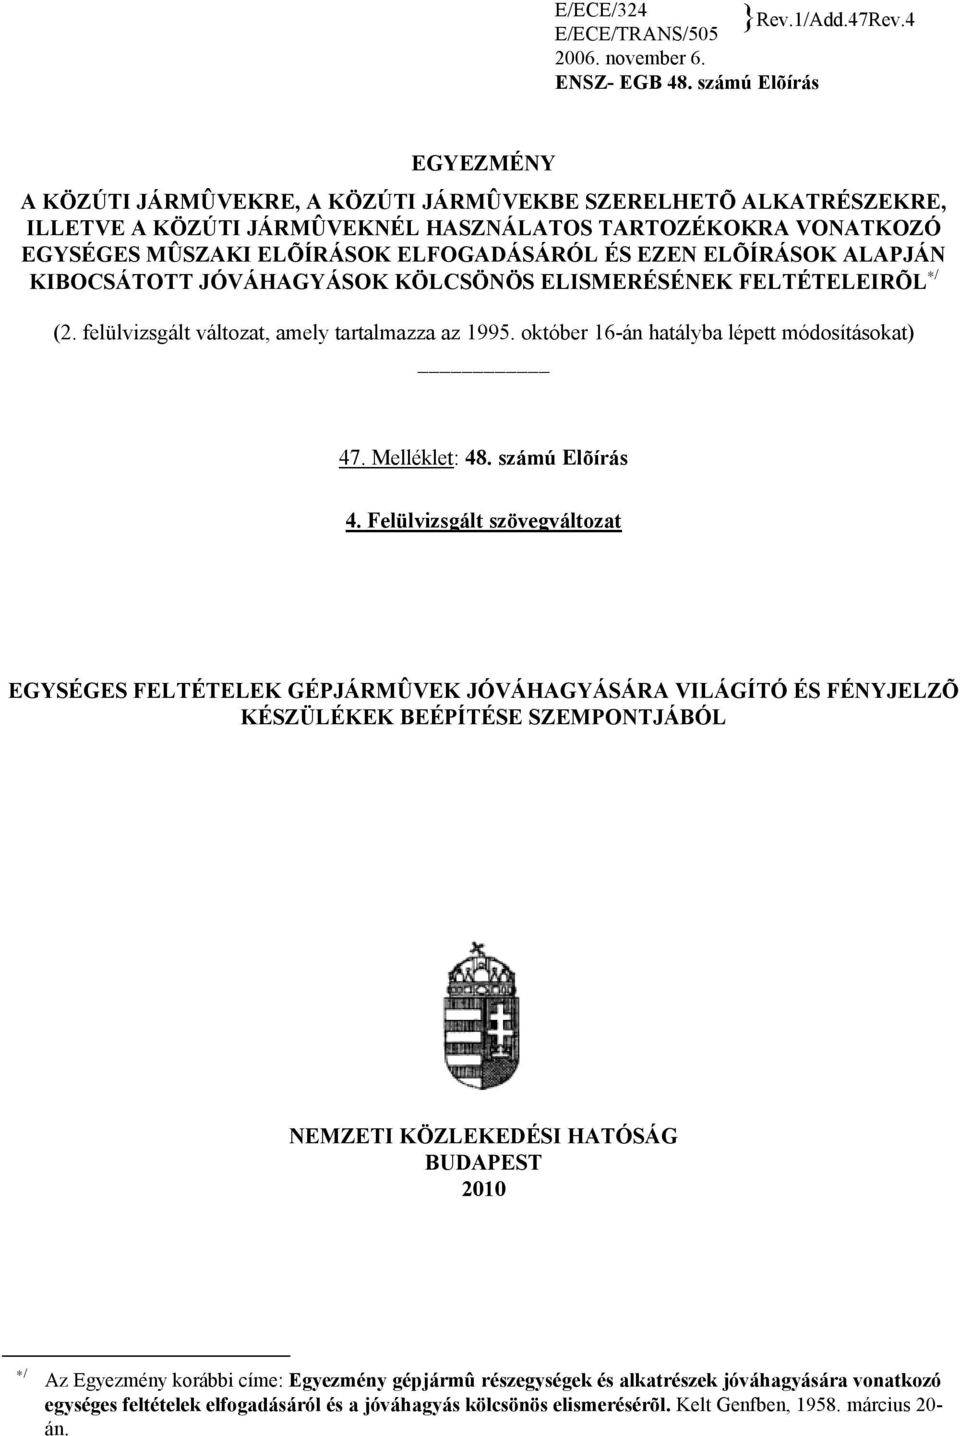 EZEN ELÕÍRÁSOK ALAPJÁN KIBOCSÁTOTT JÓVÁHAGYÁSOK KÖLCSÖNÖS ELISMERÉSÉNEK FELTÉTELEIRÕL / (2. felülvizsgált változat, amely tartalmazza az 1995. október 16-án hatályba lépett módosításokat) 47.